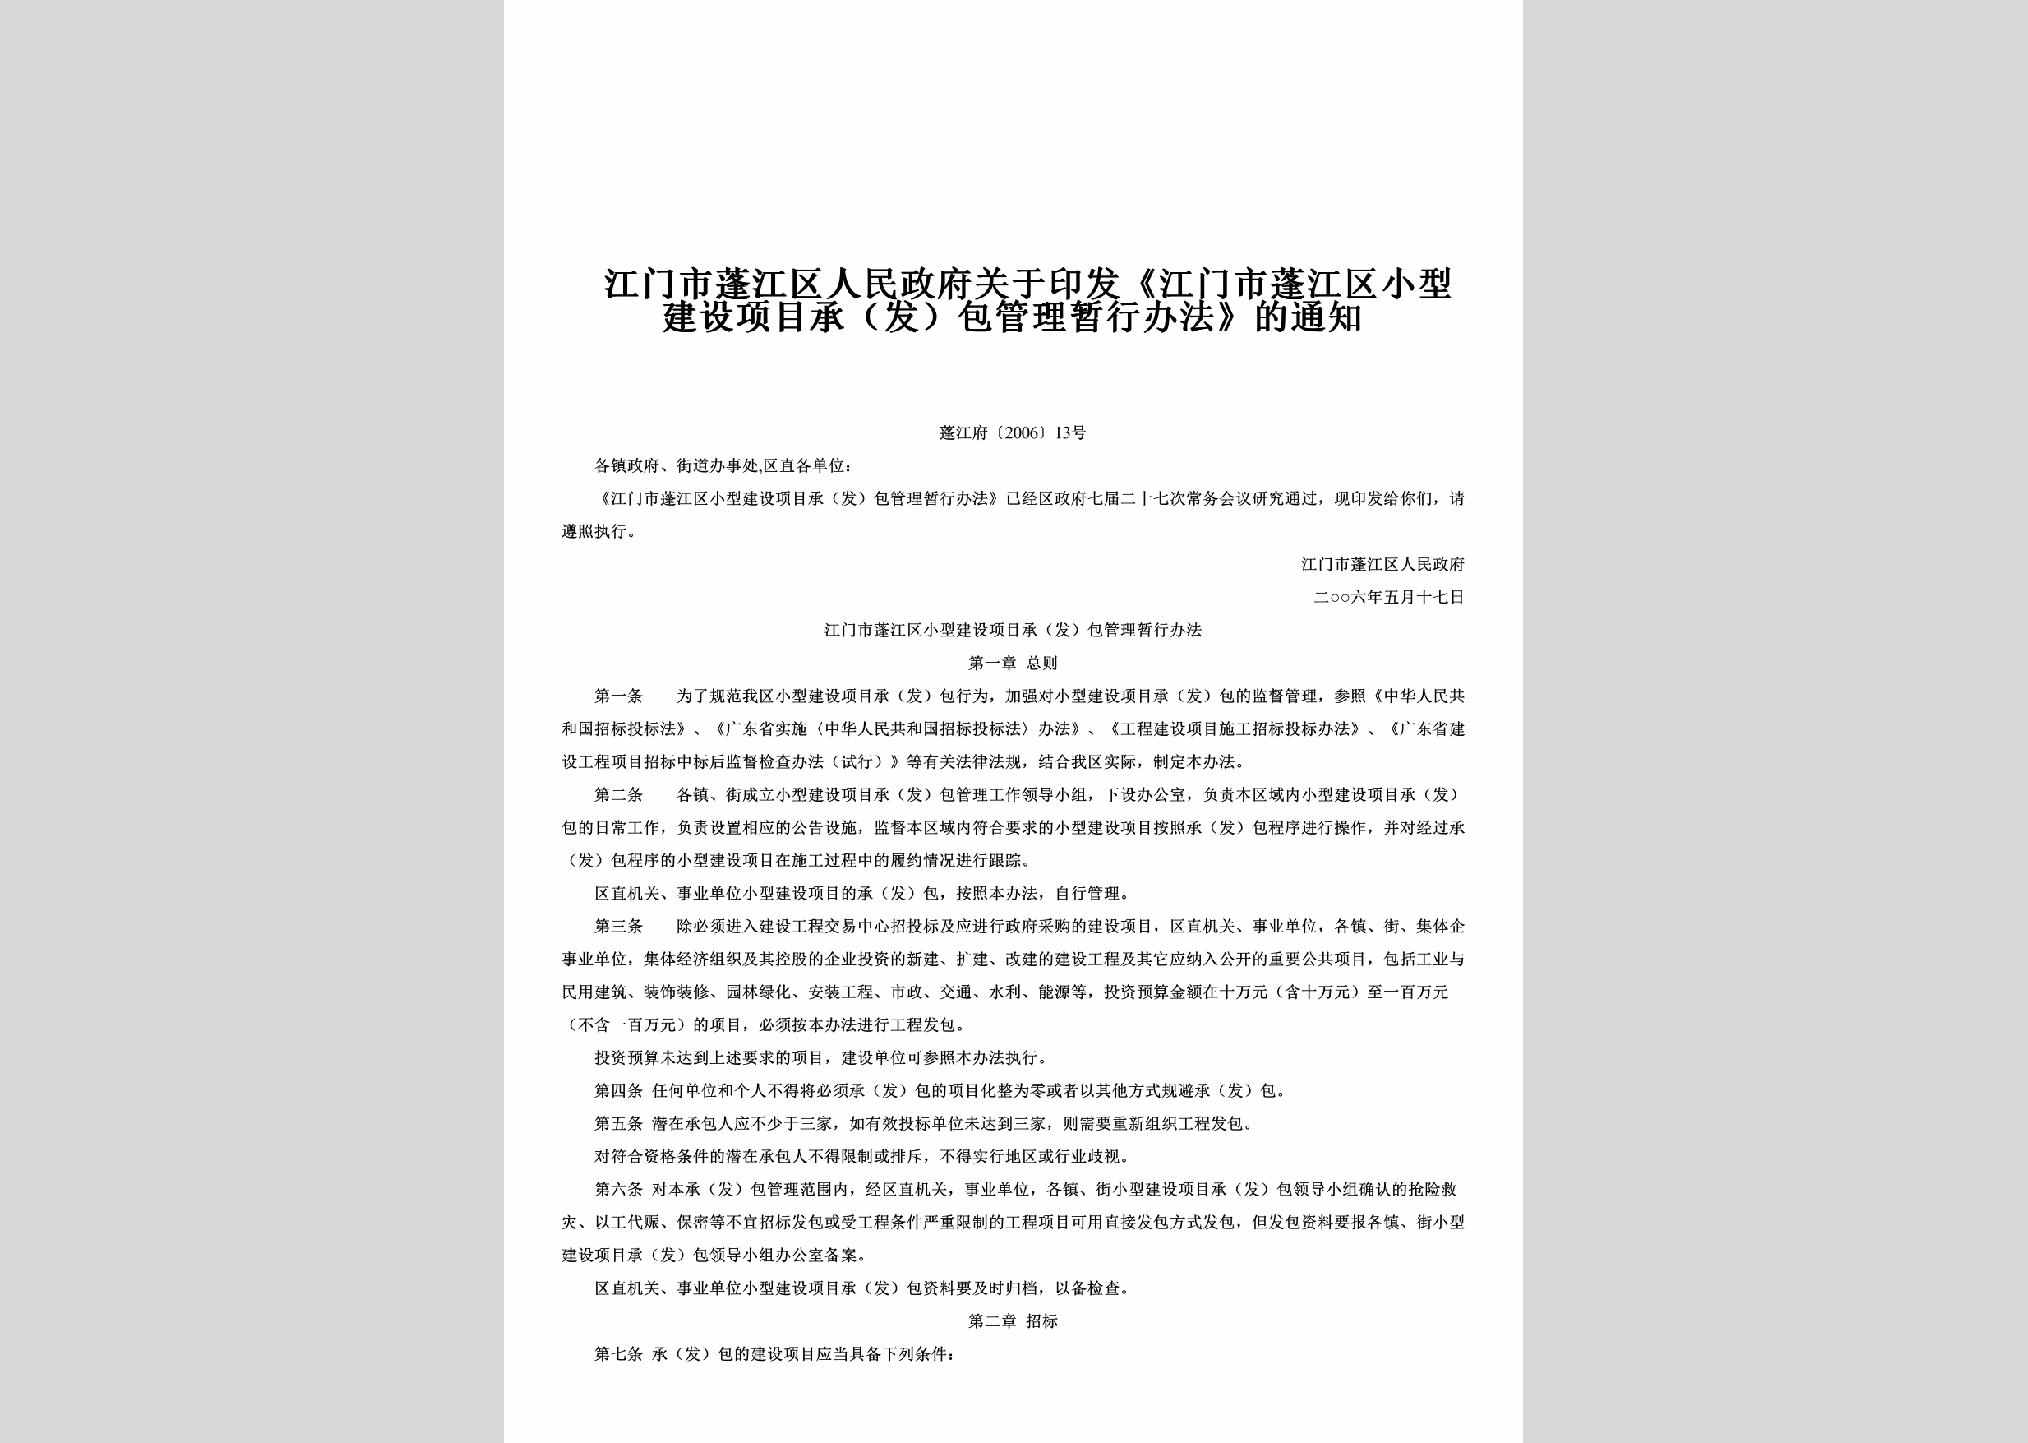 蓬江府[2006]13号：关于印发《江门市蓬江区小型建设项目承（发）包管理暂行办法》的通知